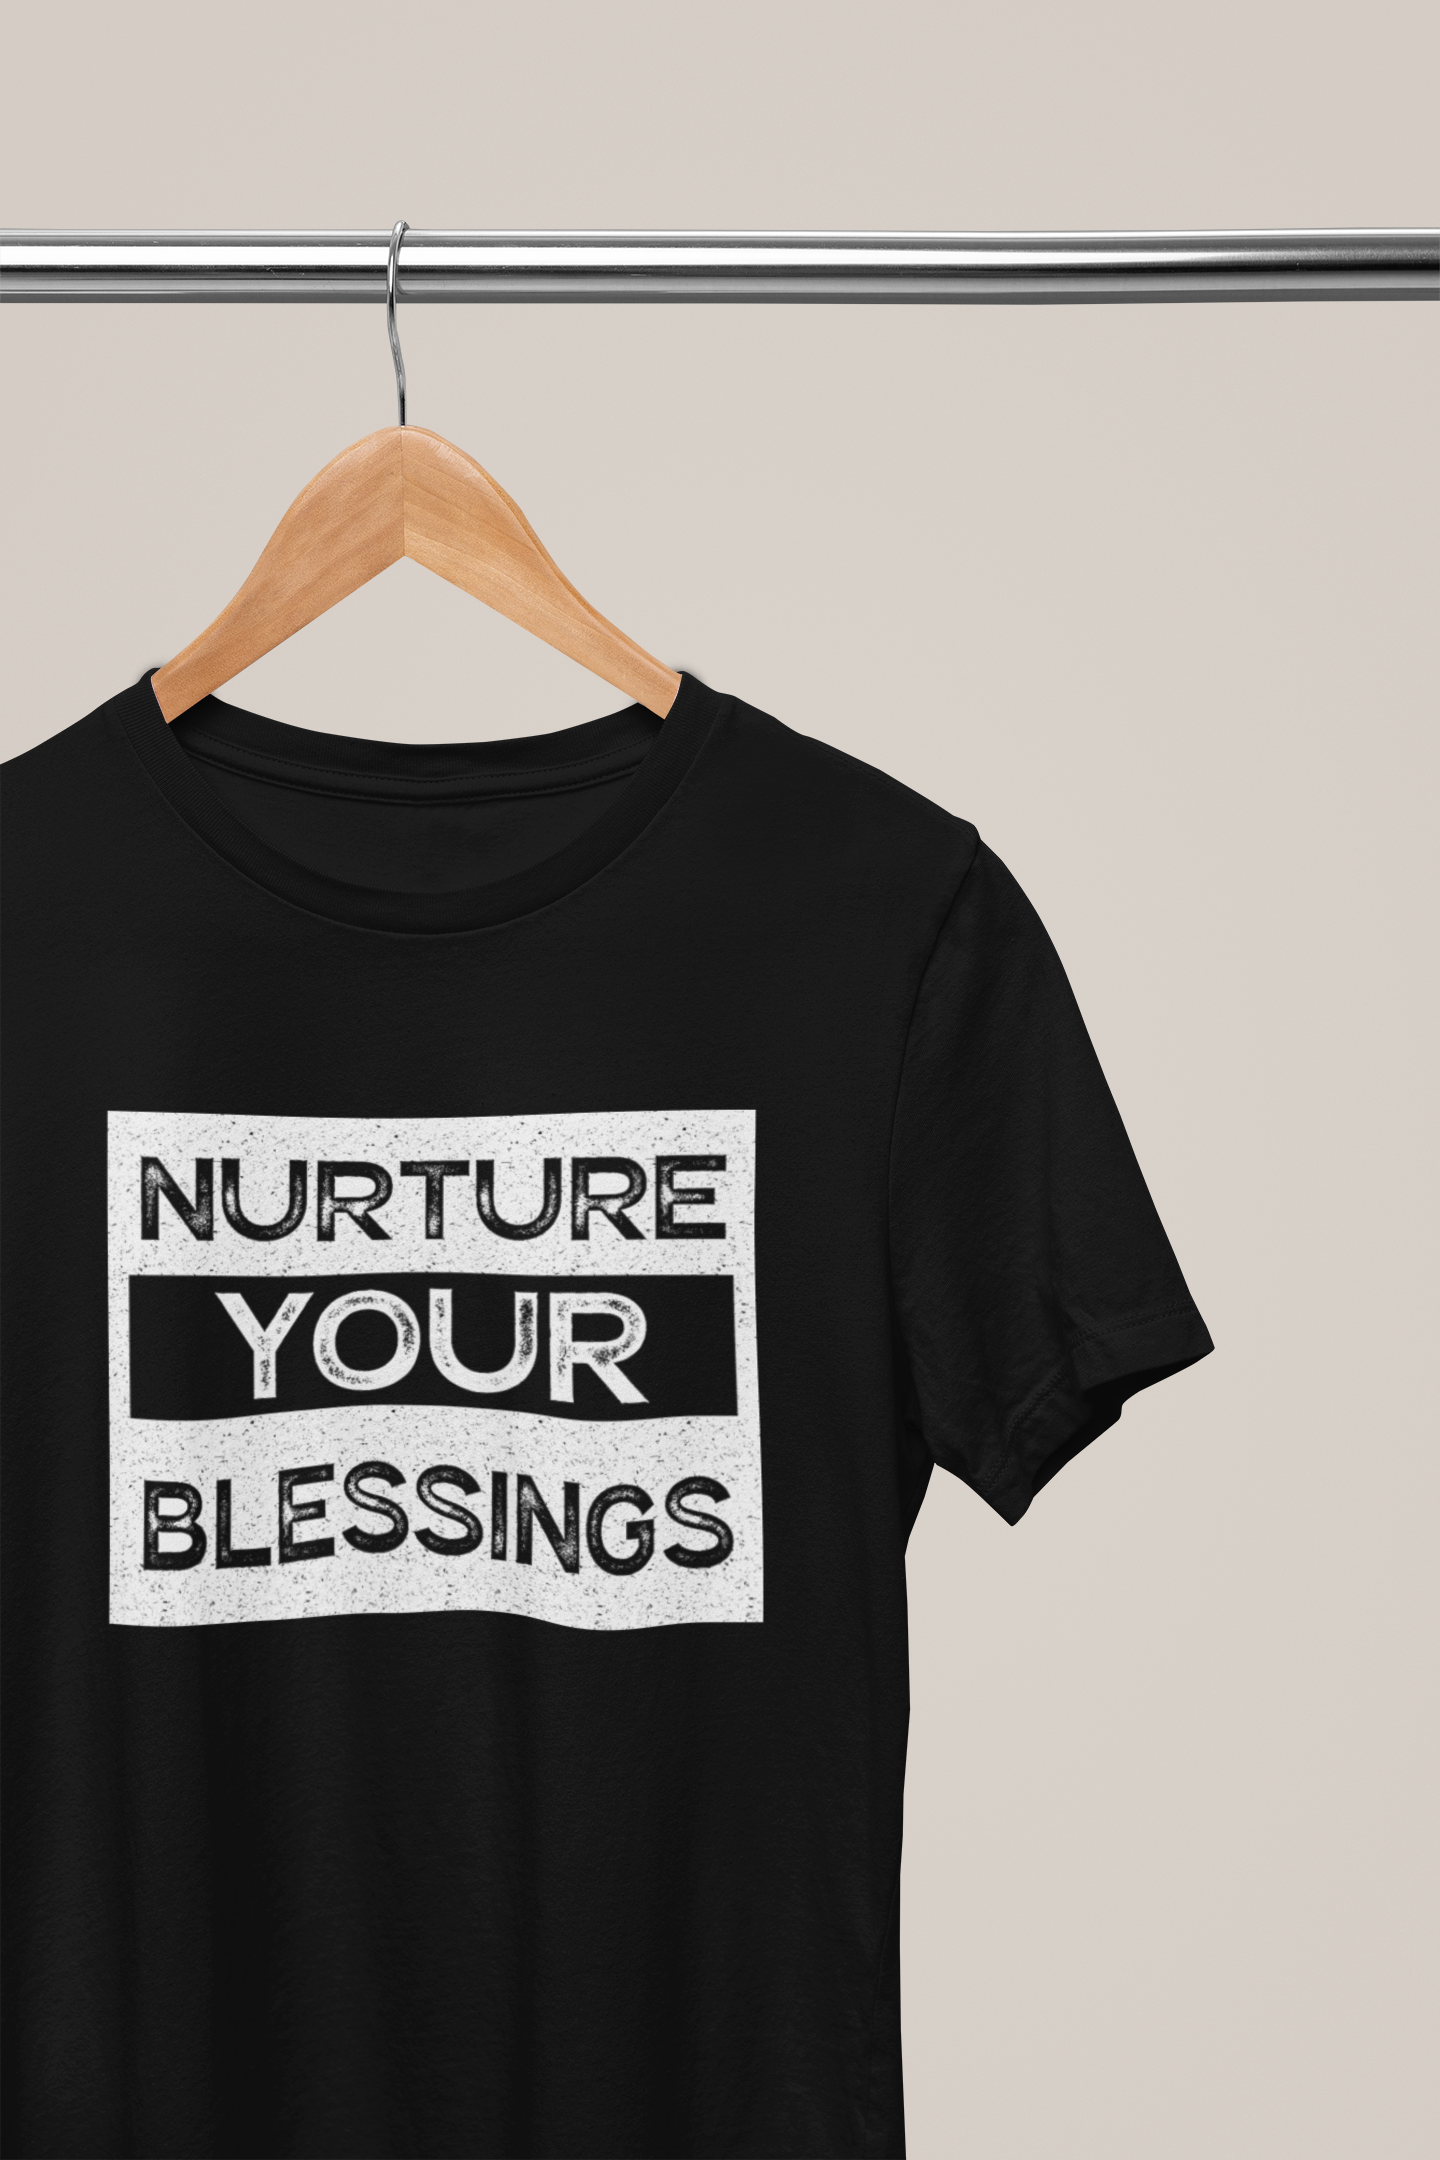 Nurture Your Blessings , Hoodies, Sweatshirts, Tees, and Mugs